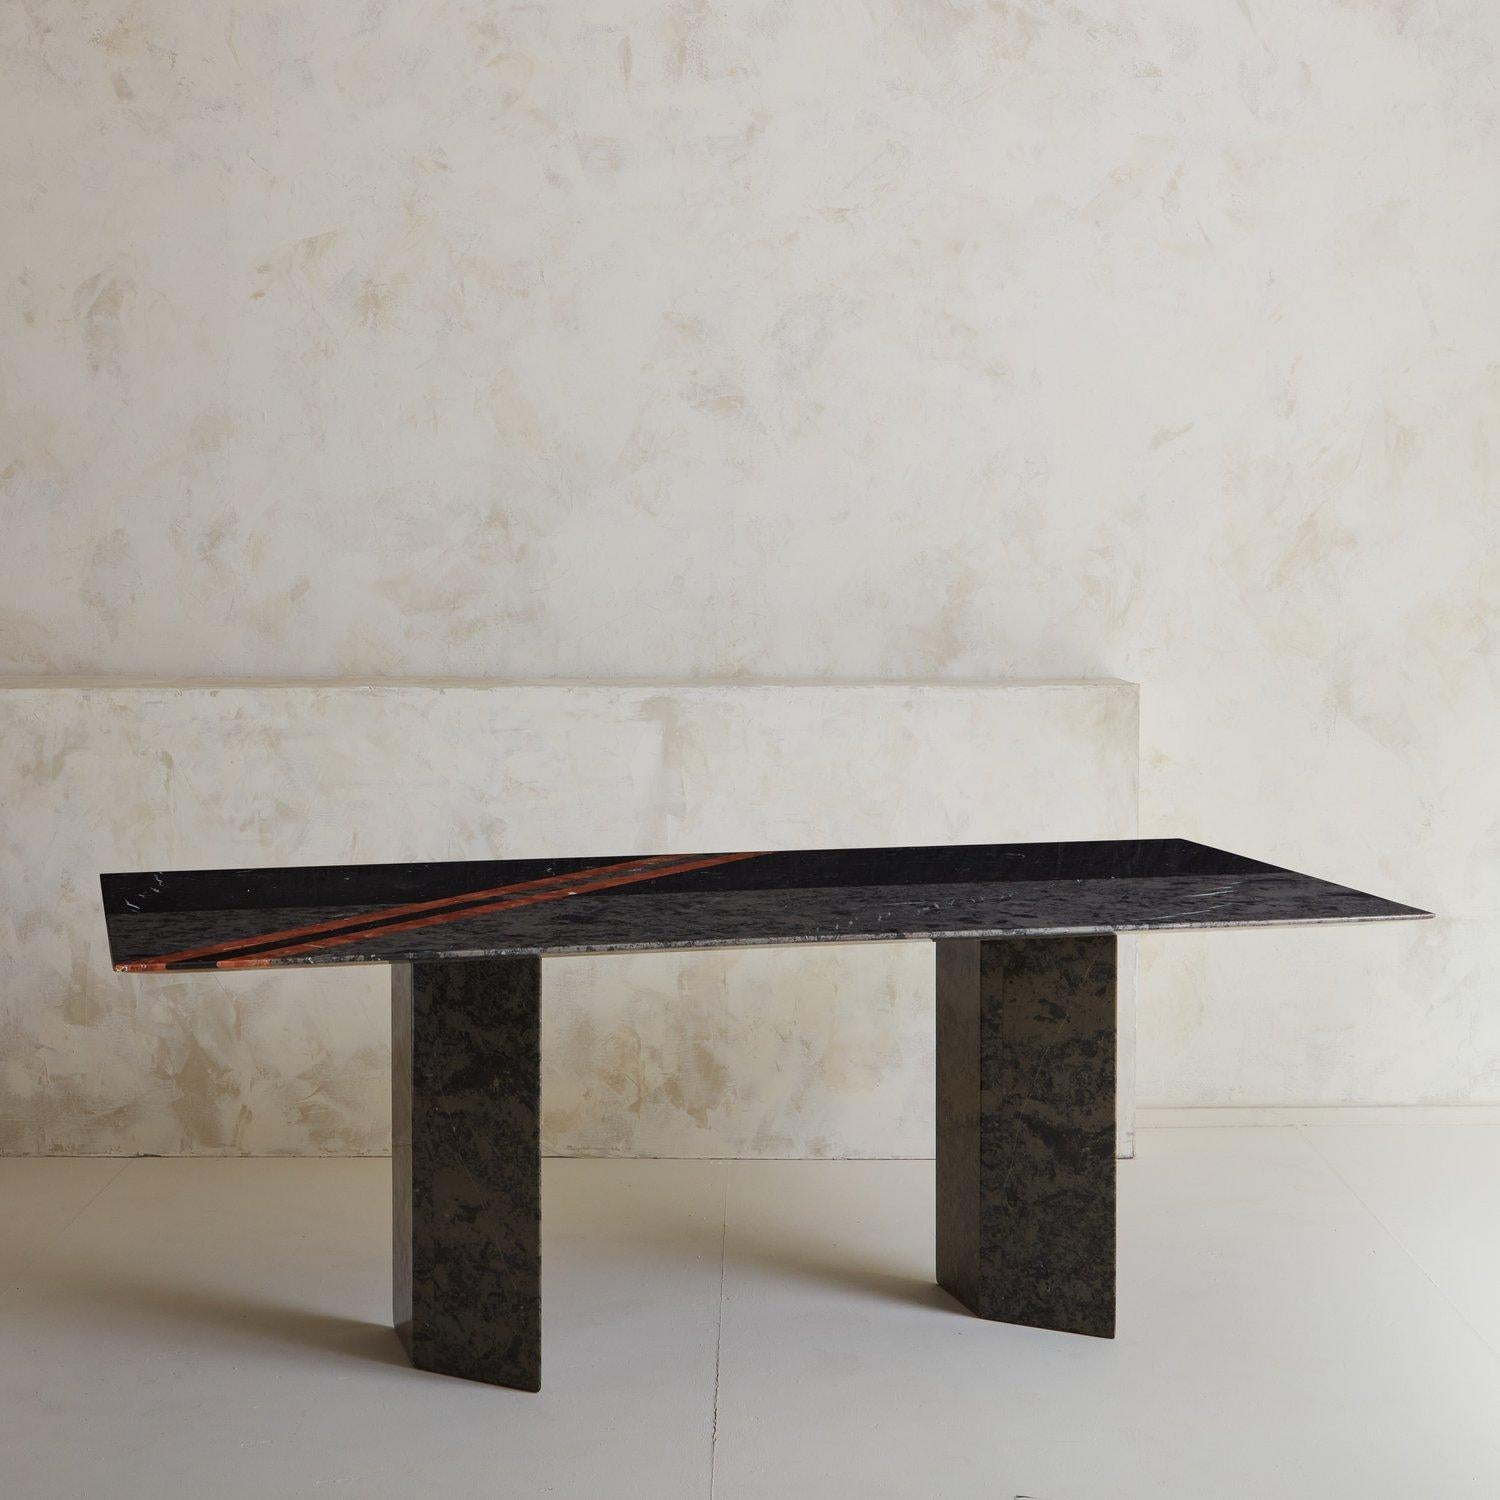 Table de salle à manger postmoderne des années 1980 en marbre Roche-Bobois, construite avec des marbres Grigio Marquina et Rosso Albania, avec un beau design linéaire. Le plateau de la table présente un élégant bord biseauté en nez de requin,